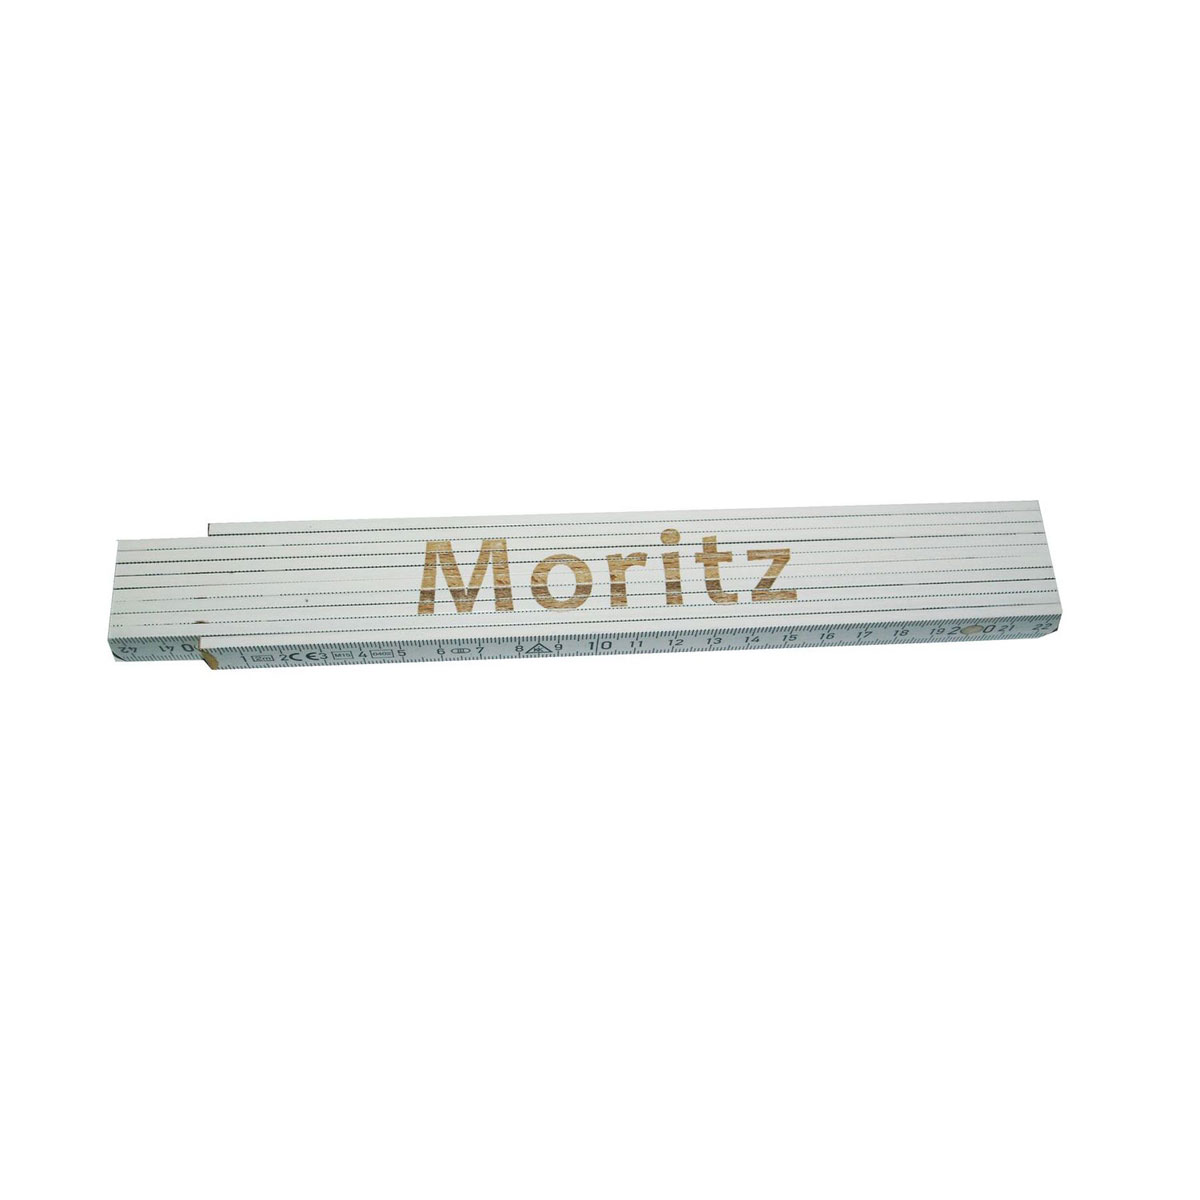 Meterstab „Moritz“, 2m, weiß